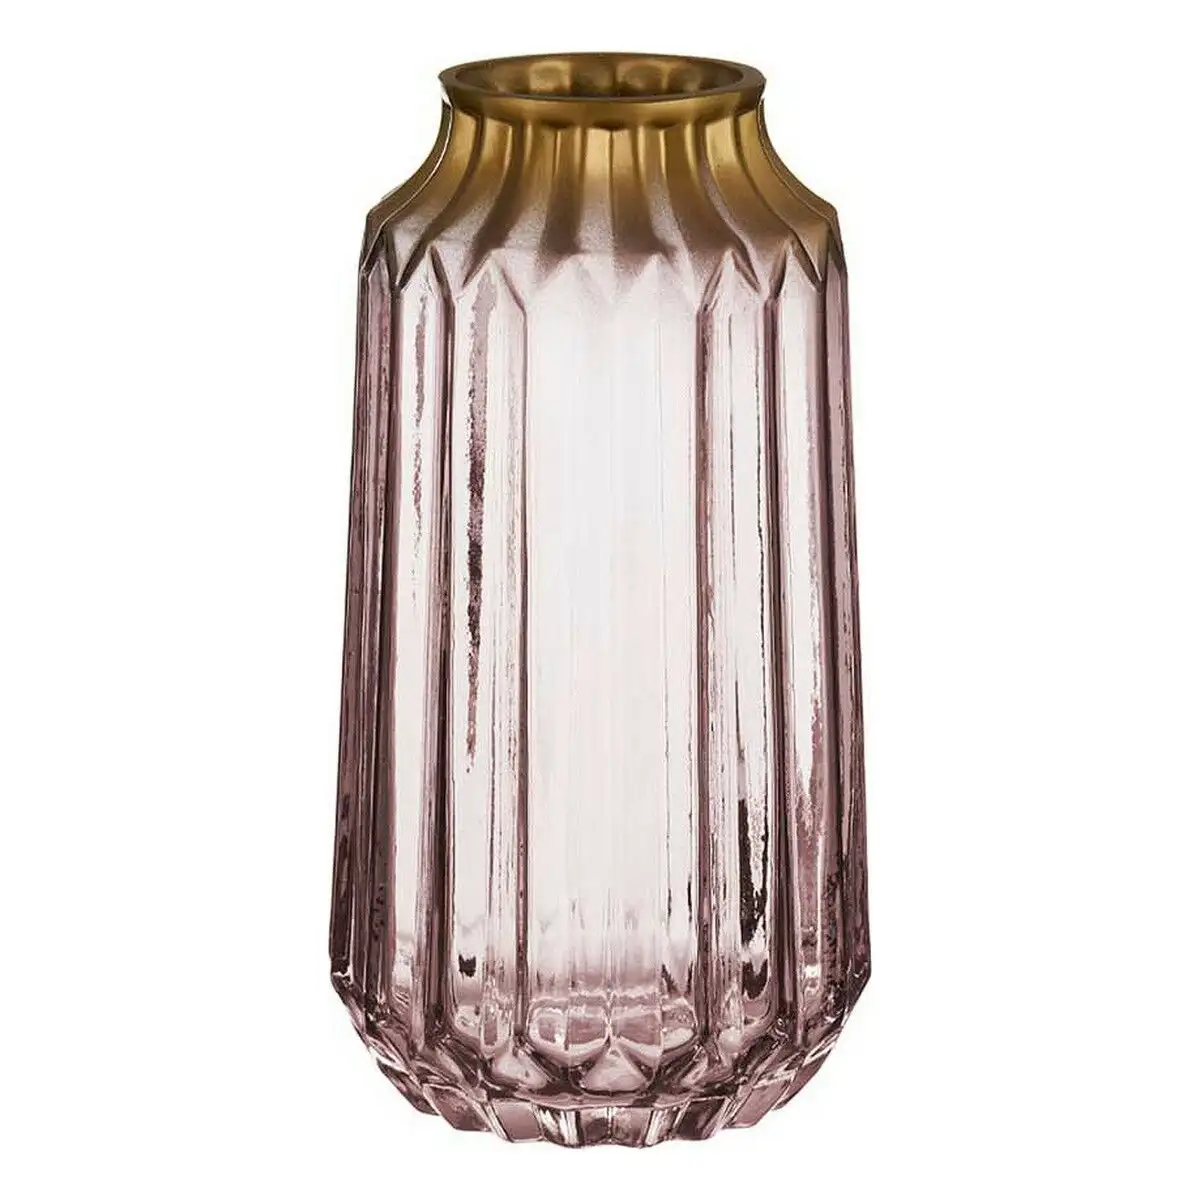 Vase dore rose verre 13 x 23 5 x 13 cm _2849. DIAYTAR SENEGAL - Où la Qualité est Notre Engagement. Explorez notre boutique en ligne pour découvrir des produits conçus pour vous apporter satisfaction et plaisir.